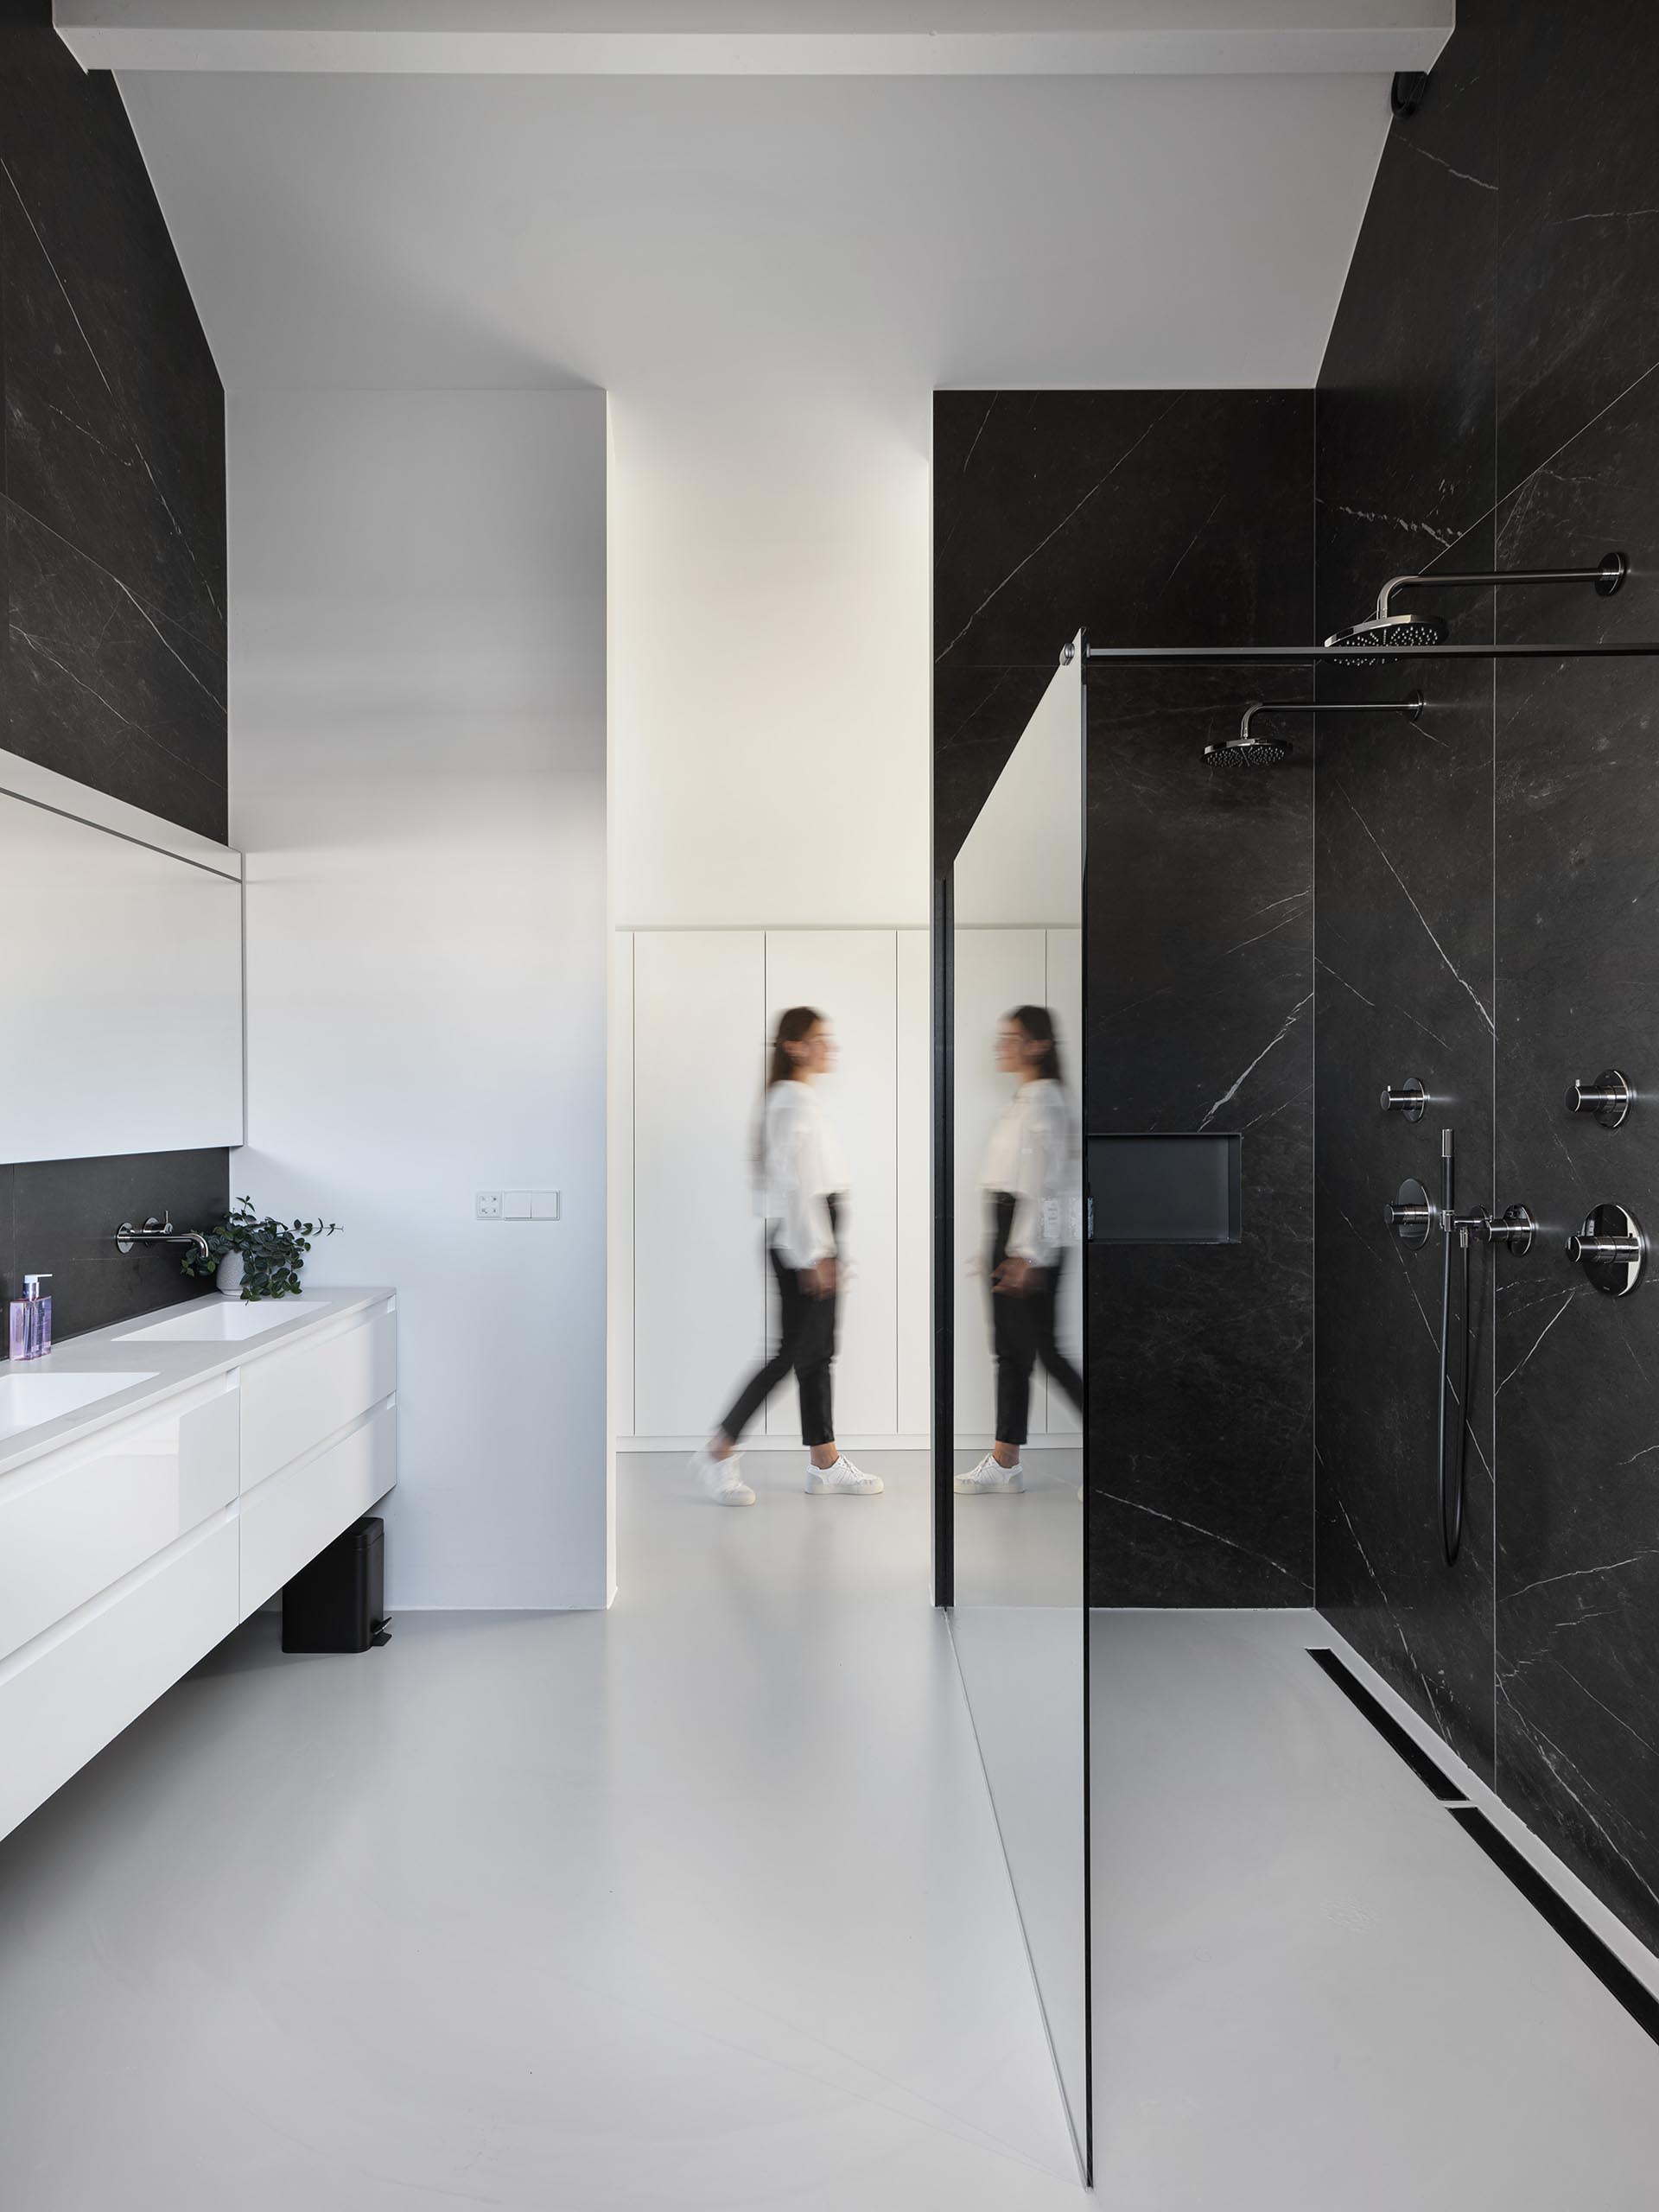 Стены этой современной ванной комнаты украшены черным камнем, который контрастирует с белым туалетным столиком.